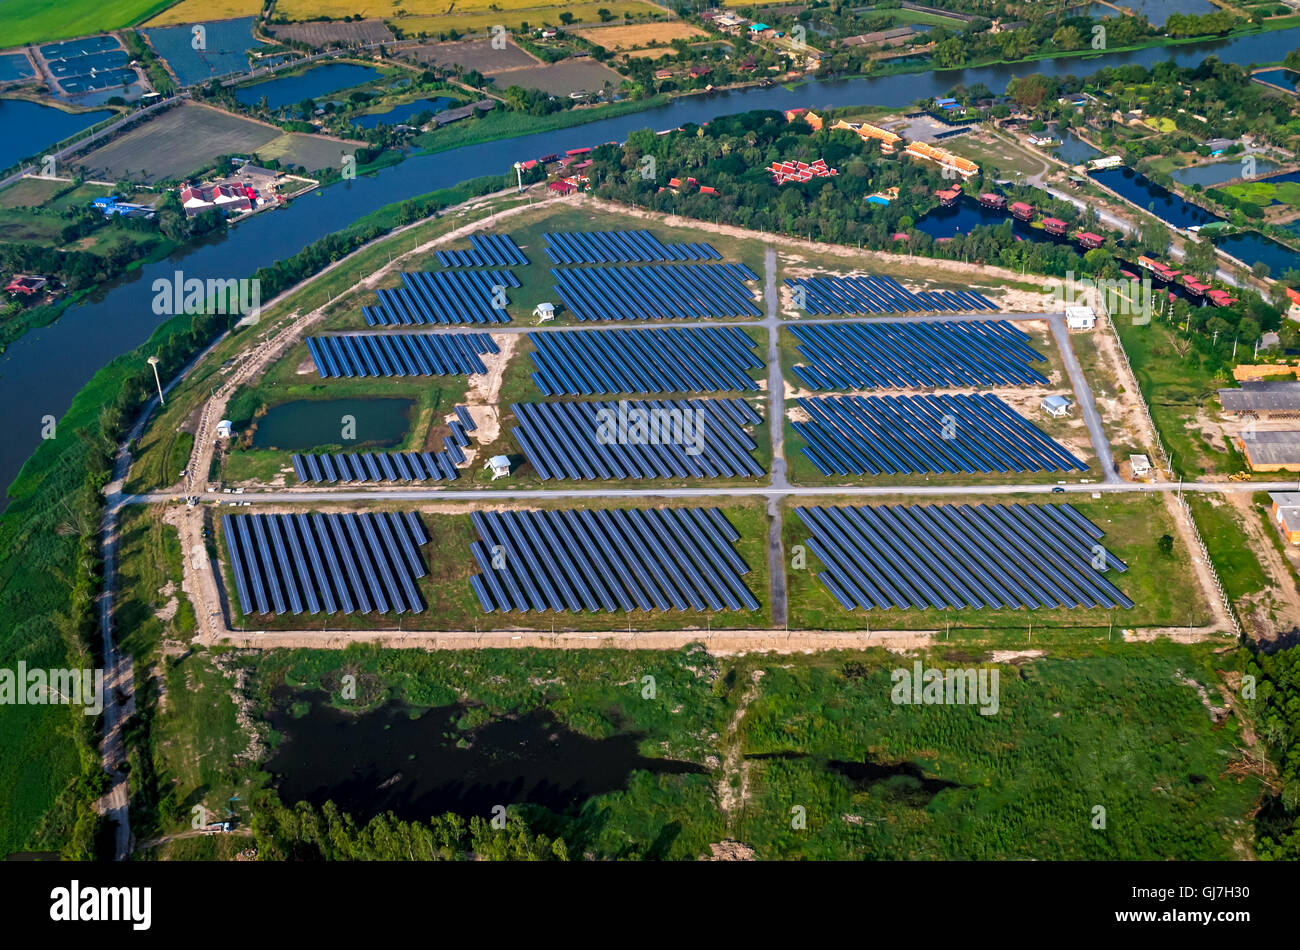 Impianto fotovoltaico pannelli solari foto aerea dell'aria al di fuori di Bangkok in Thailandia Foto Stock